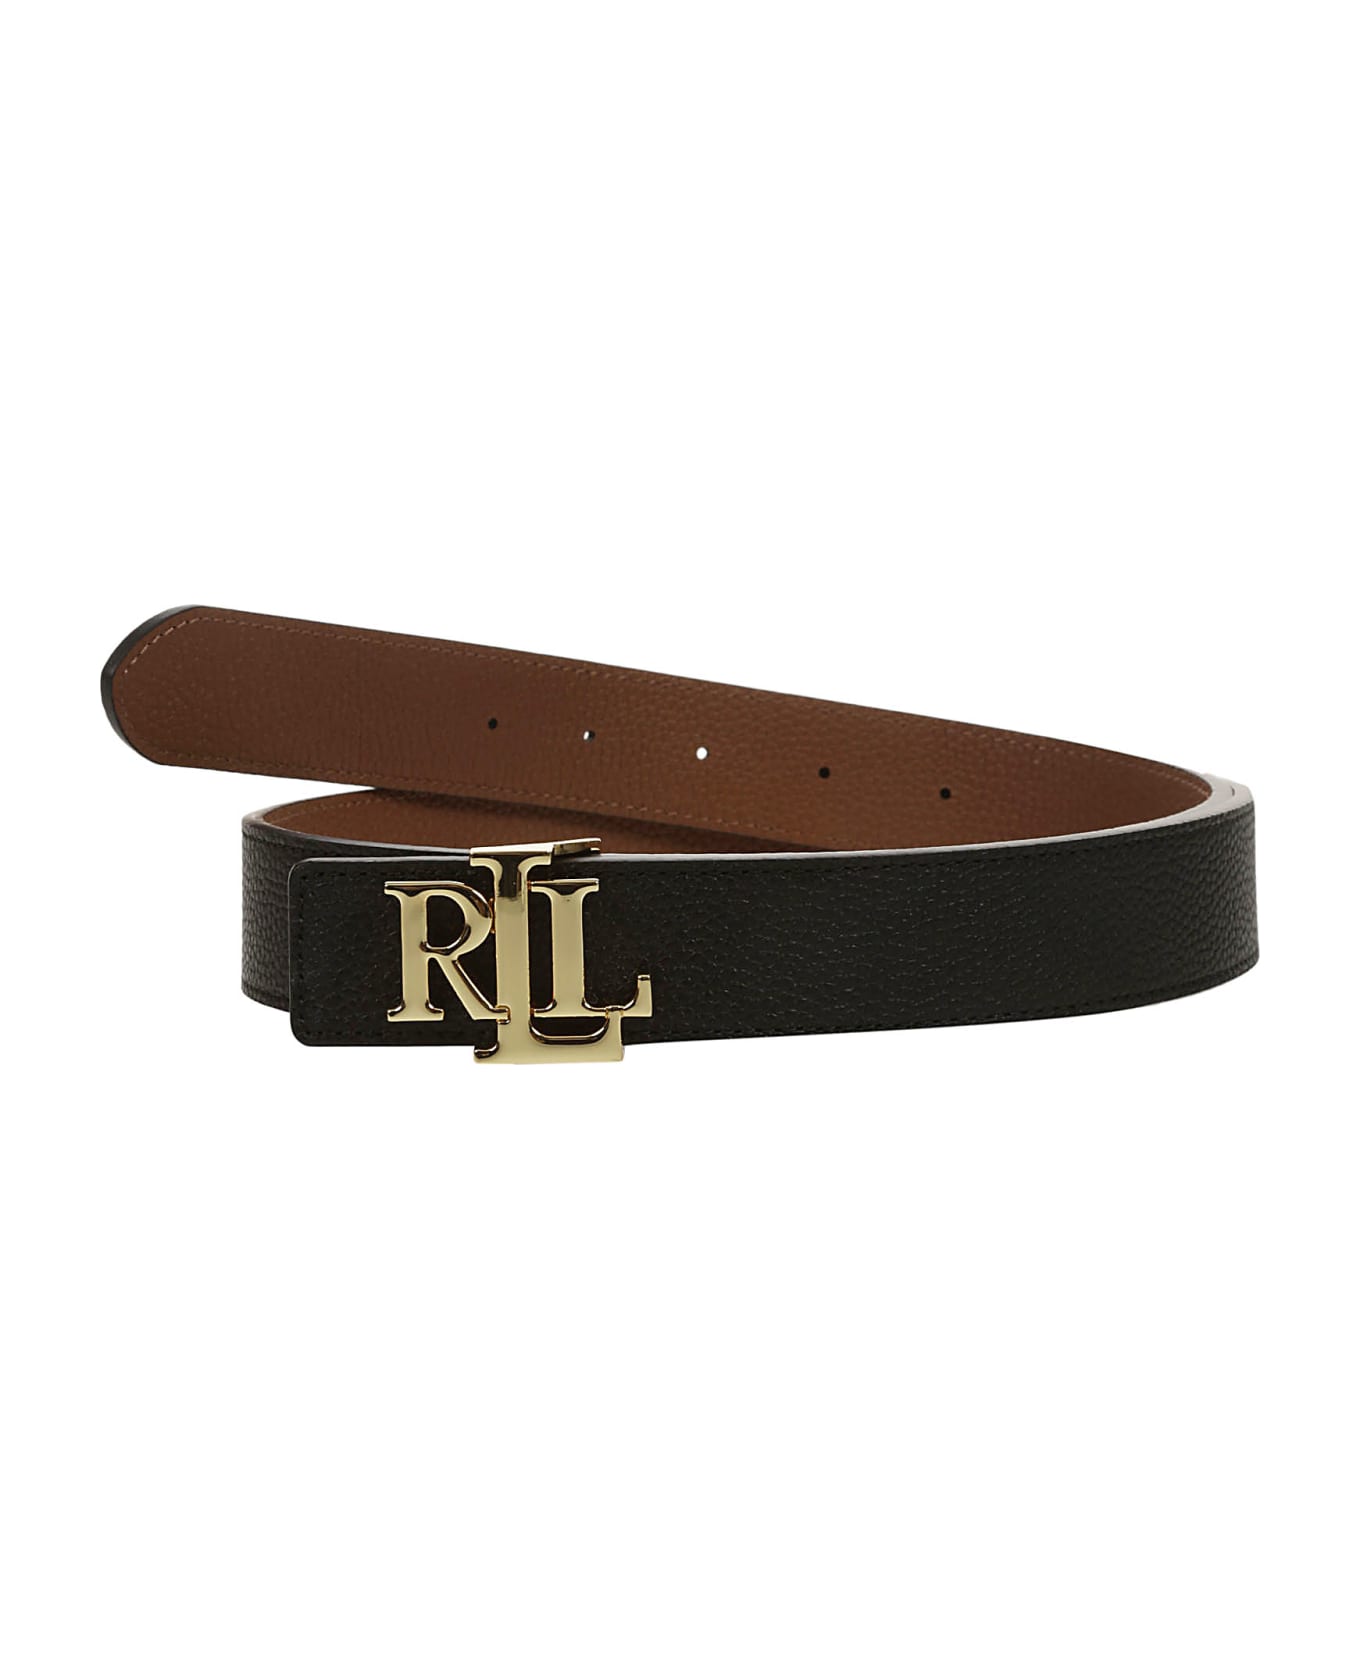 Ralph Lauren Rev Lrl 30 Belt Medium - Black Lauren Tan ベルト